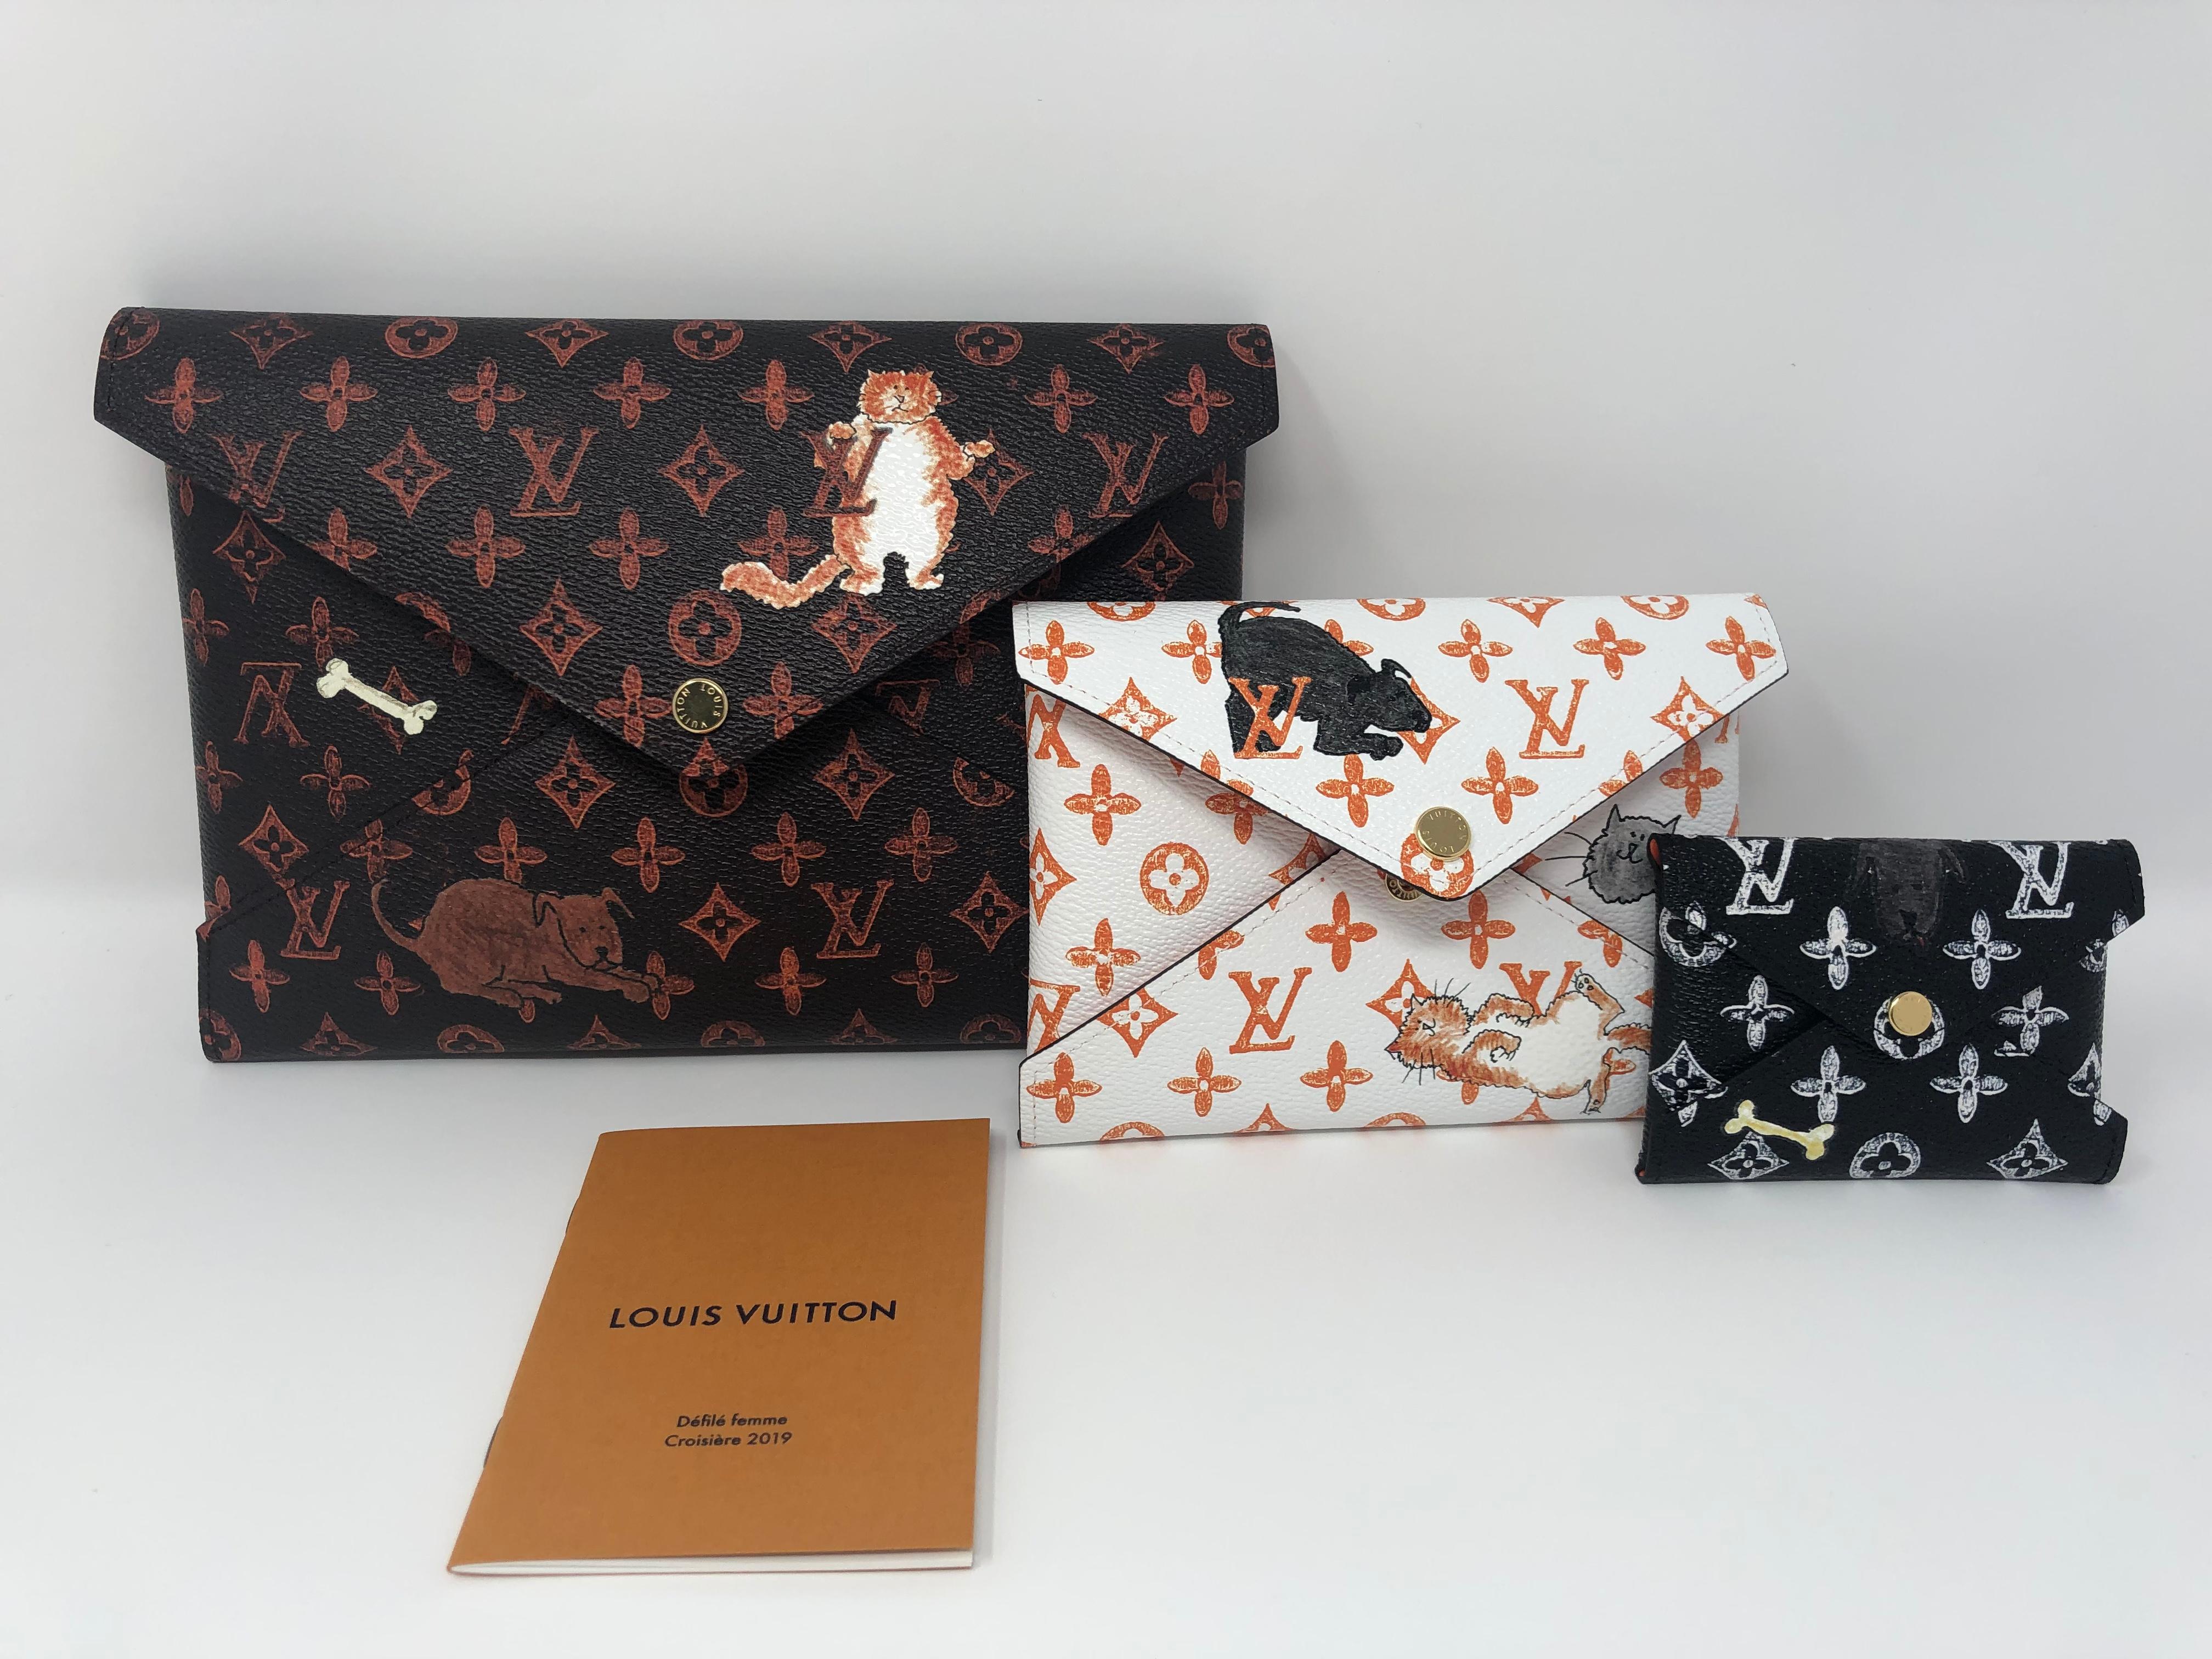 Black Louis Vuitton Catogram Grace Coddington Clutch Set